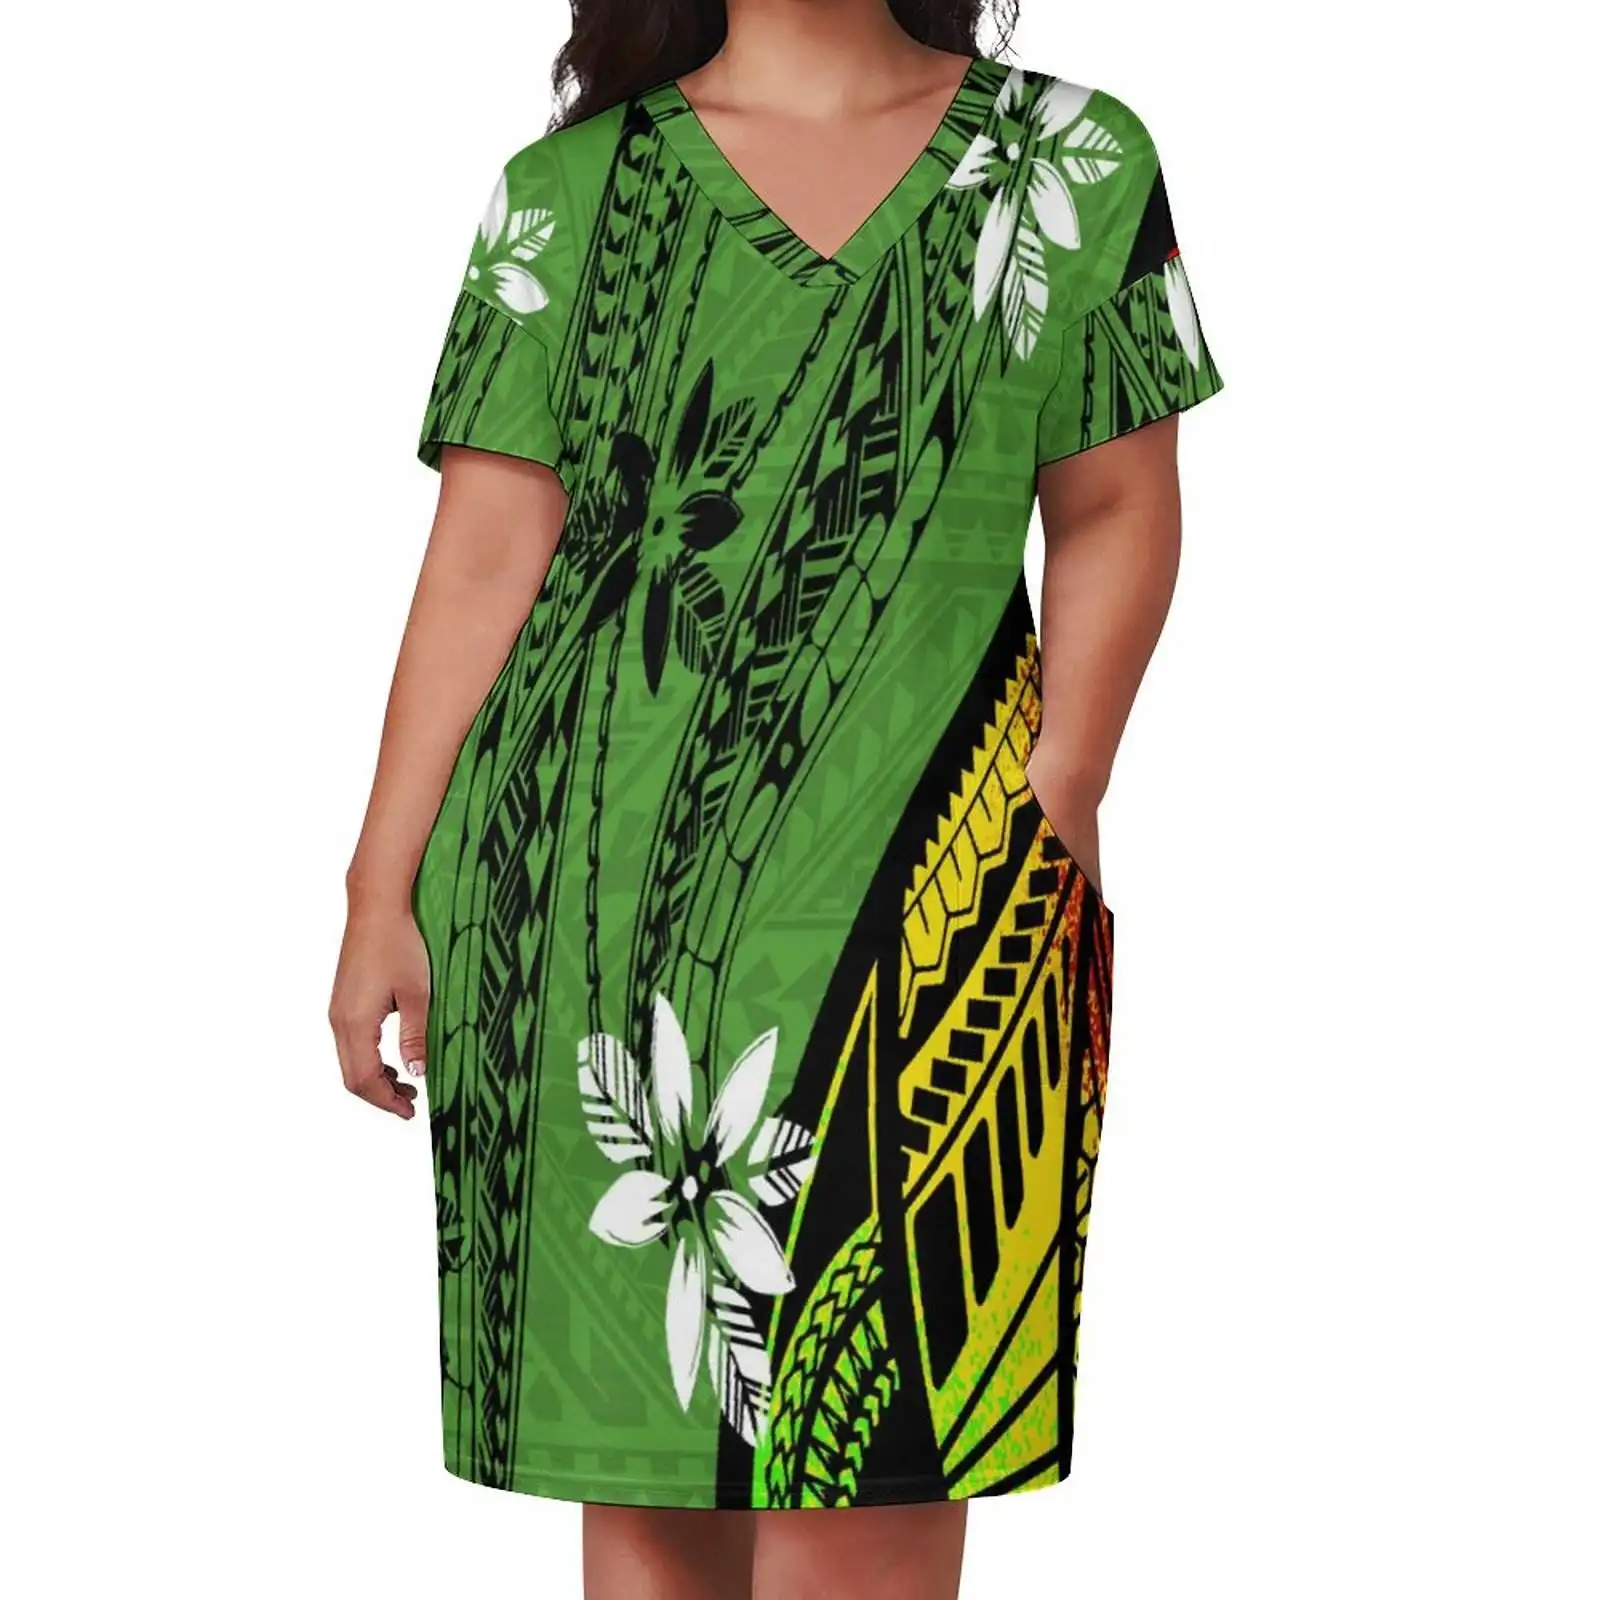 Verde Samoan Puletasi Flower Girls' abiti di alta qualità elastico in poliestere vestito estivo donna abbigliamento Casual da festa all'ingrosso